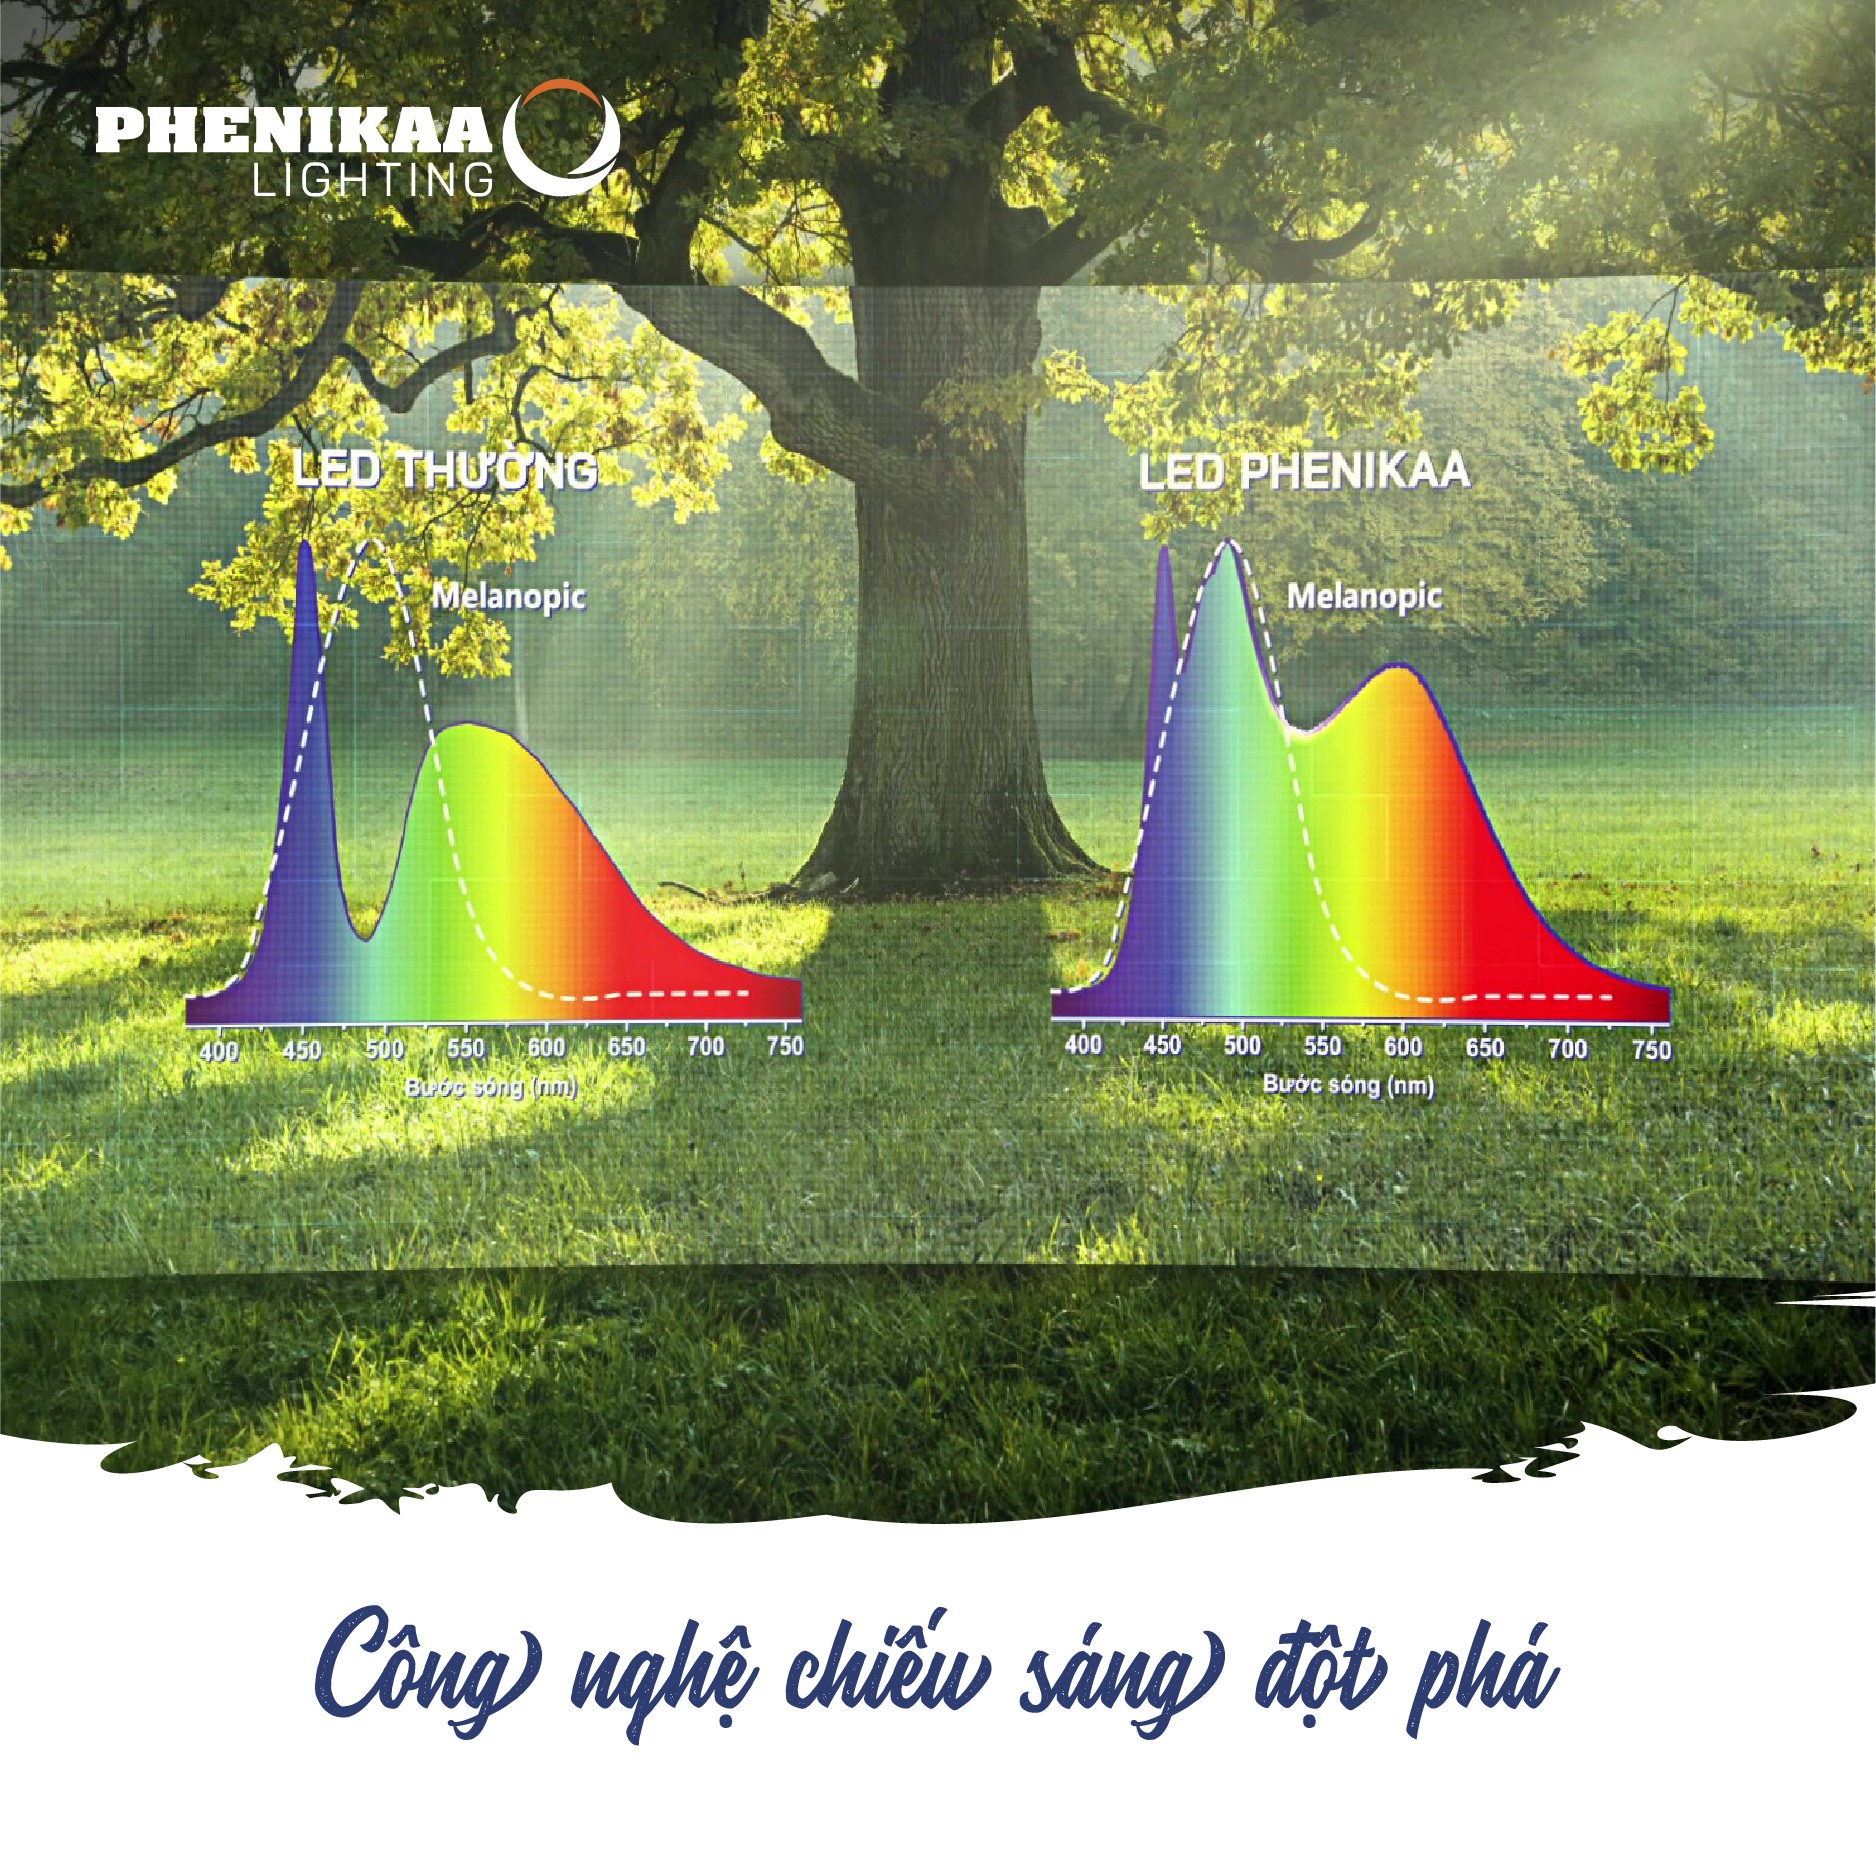 Công nghệ Phenikaa Natural TrueCircadian ứng dụng trong đèn LED Phenikaa